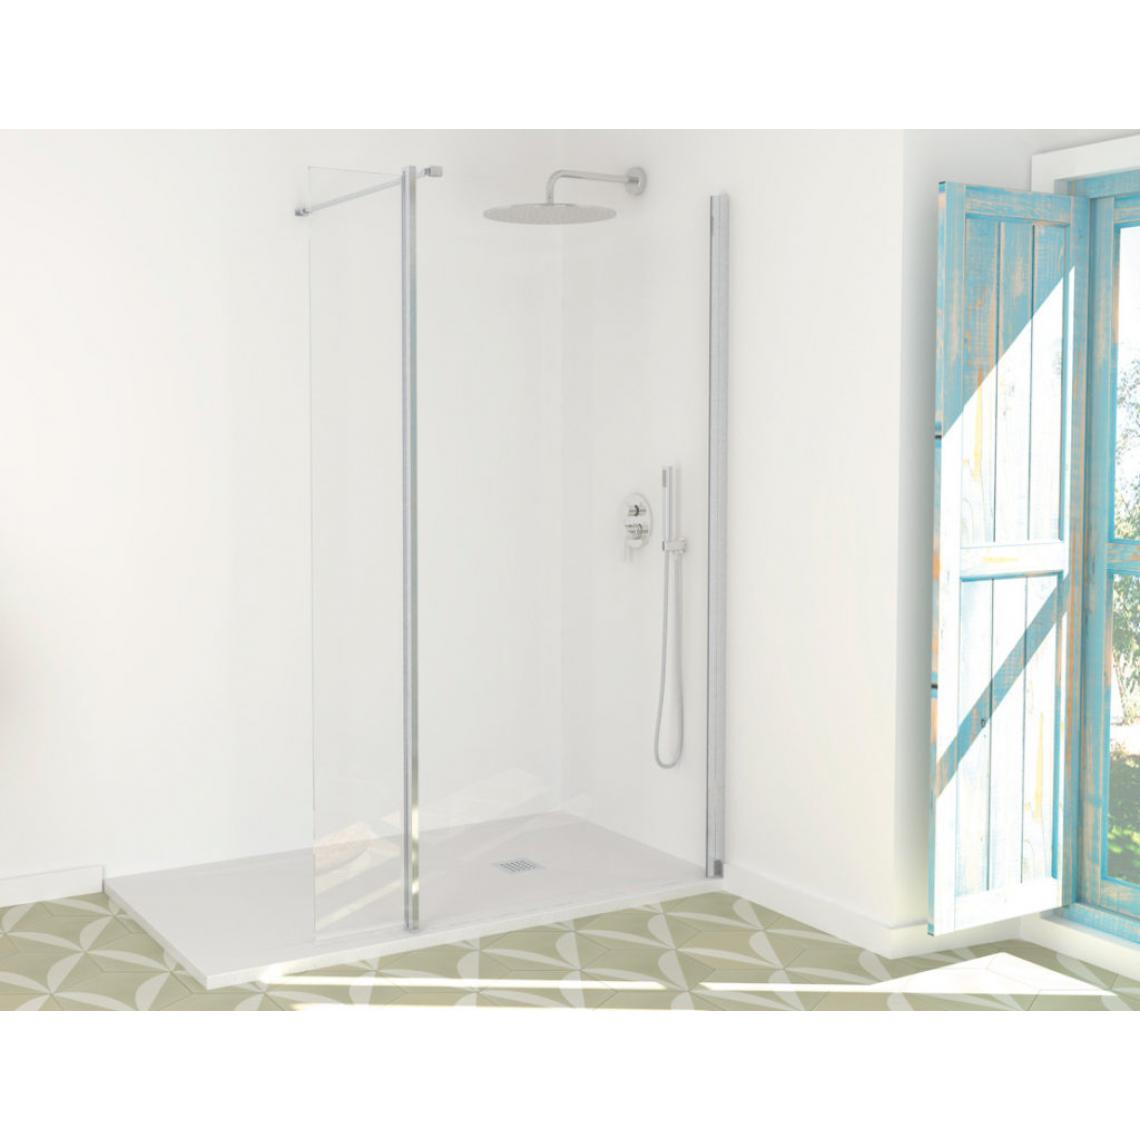 Sanycces - Paroi de douche fixe avec aile pivotante New Lisboa - 70 cm - Cabine de douche